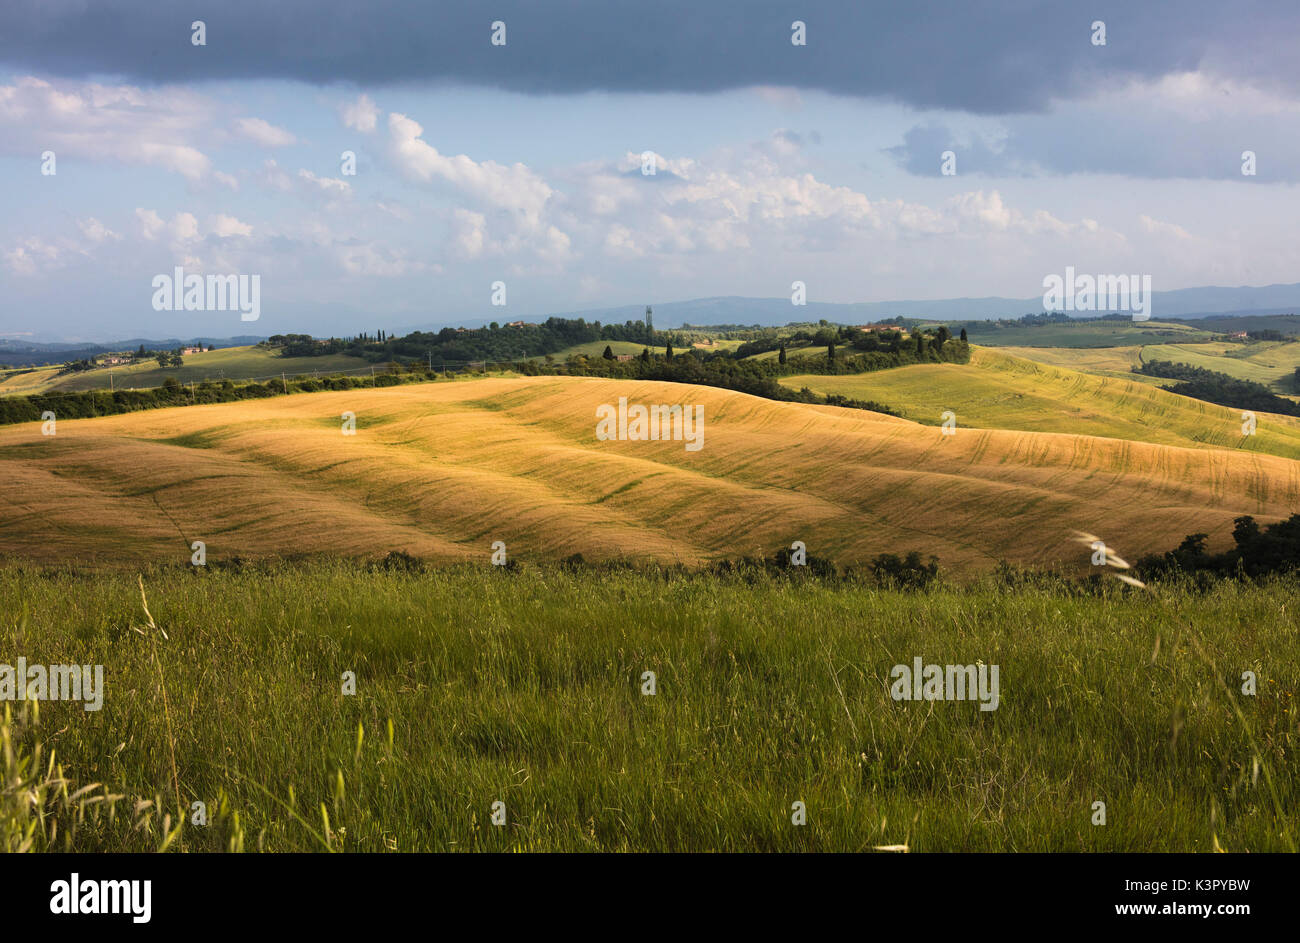 Verdi colline e erba nel paesaggio rurale delle Crete Senesi (Crete Senesi) provincia di Siena Toscana Italia Europa Foto Stock